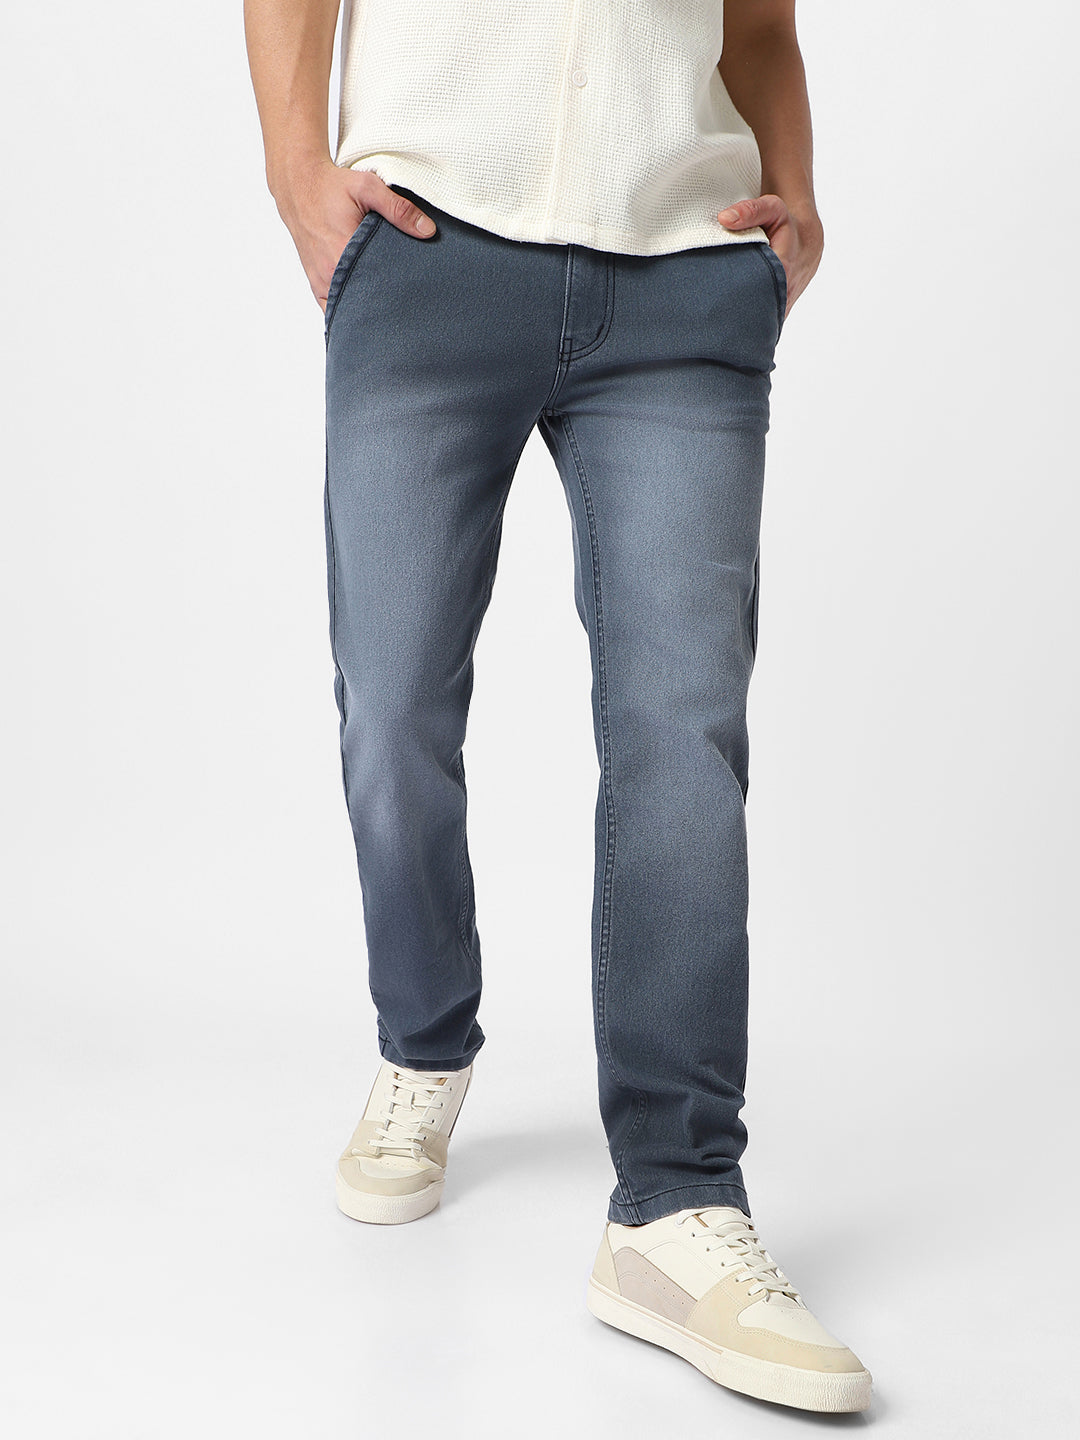 Men's Grey Regular Fit Washed Jeans Stretchable